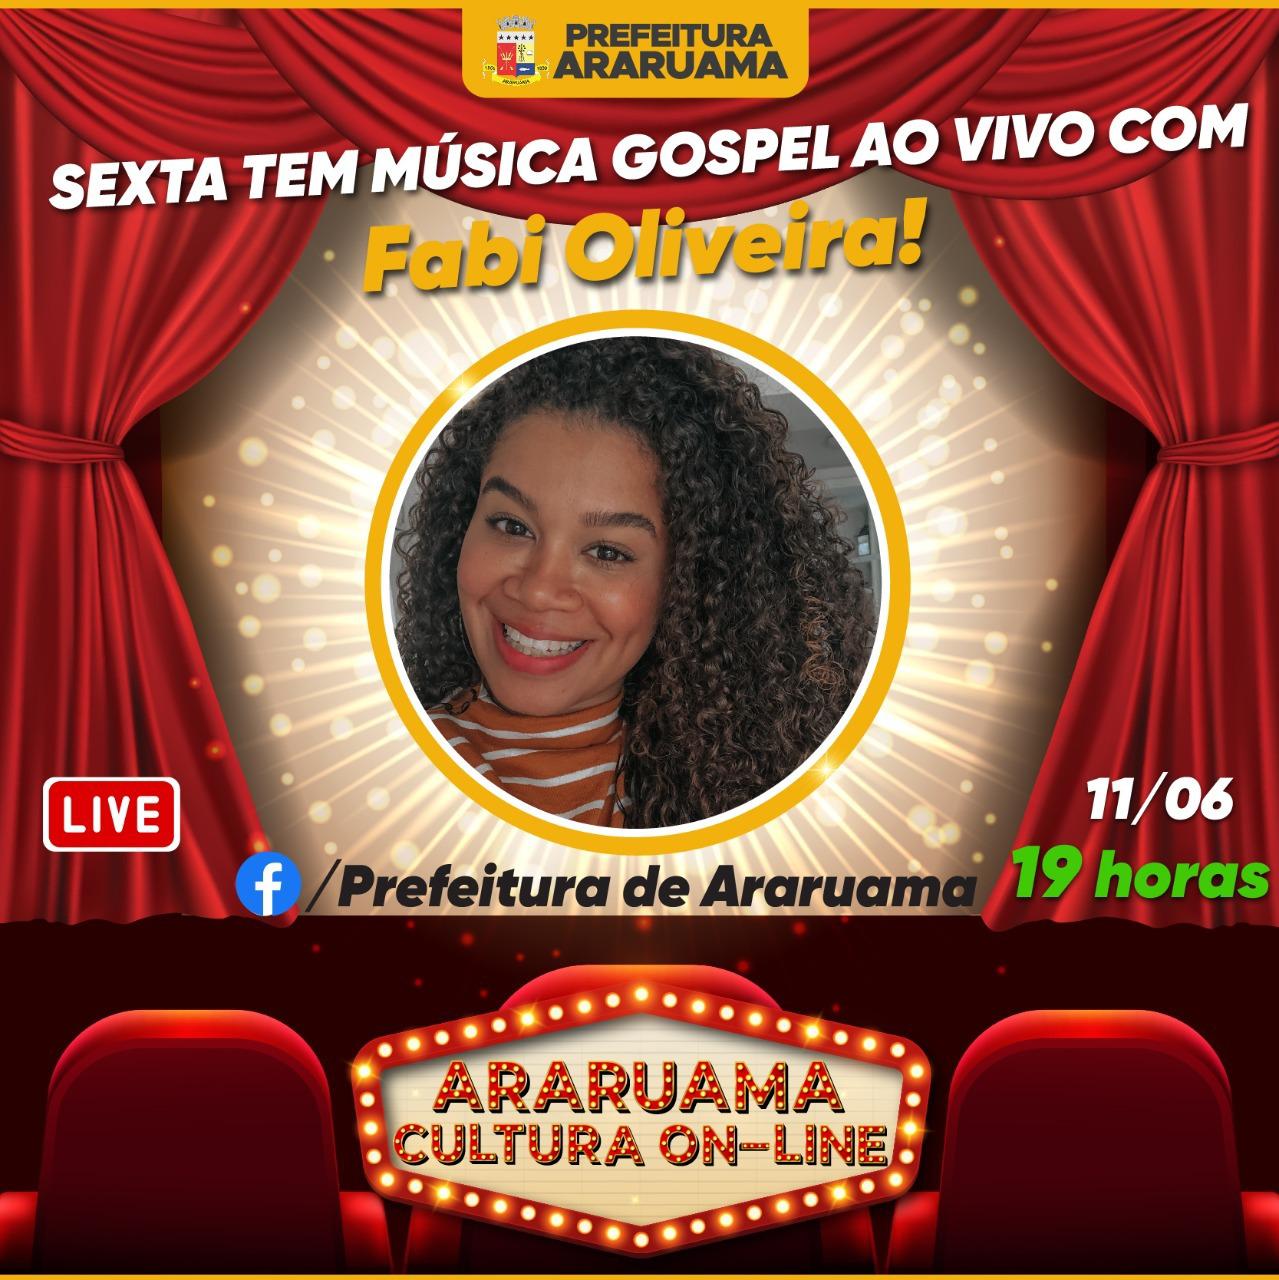 Sexta-feira tem show gospel no palco do “Araruama Cultura On-line“